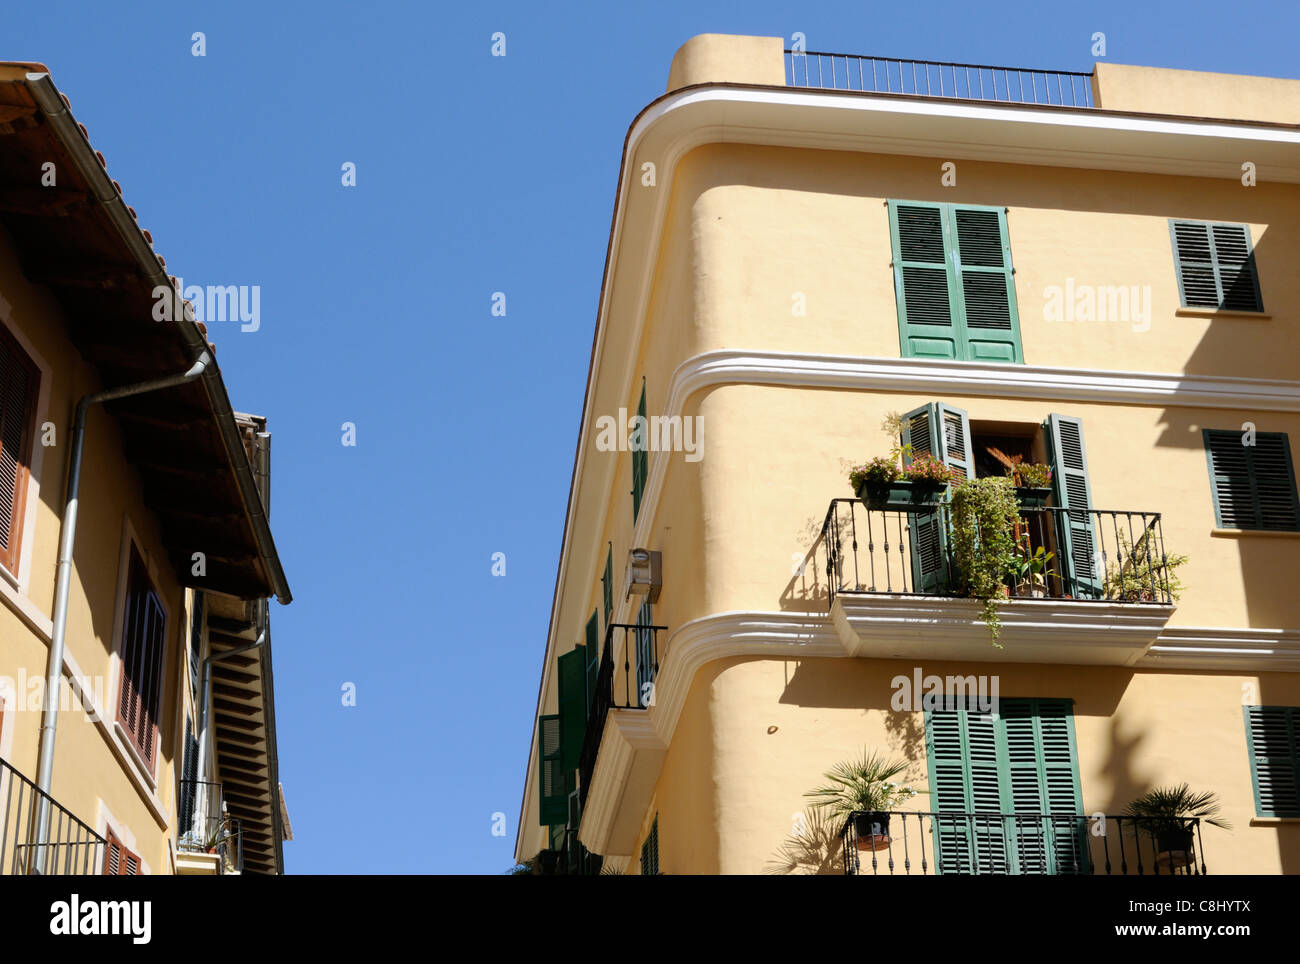 Wohngebäude vor blauem Himmel in Palma di Mallorca, Spanien. | Edilizia Residenziale contro il cielo blu a Palma di Maiorca, Spagna. Foto Stock